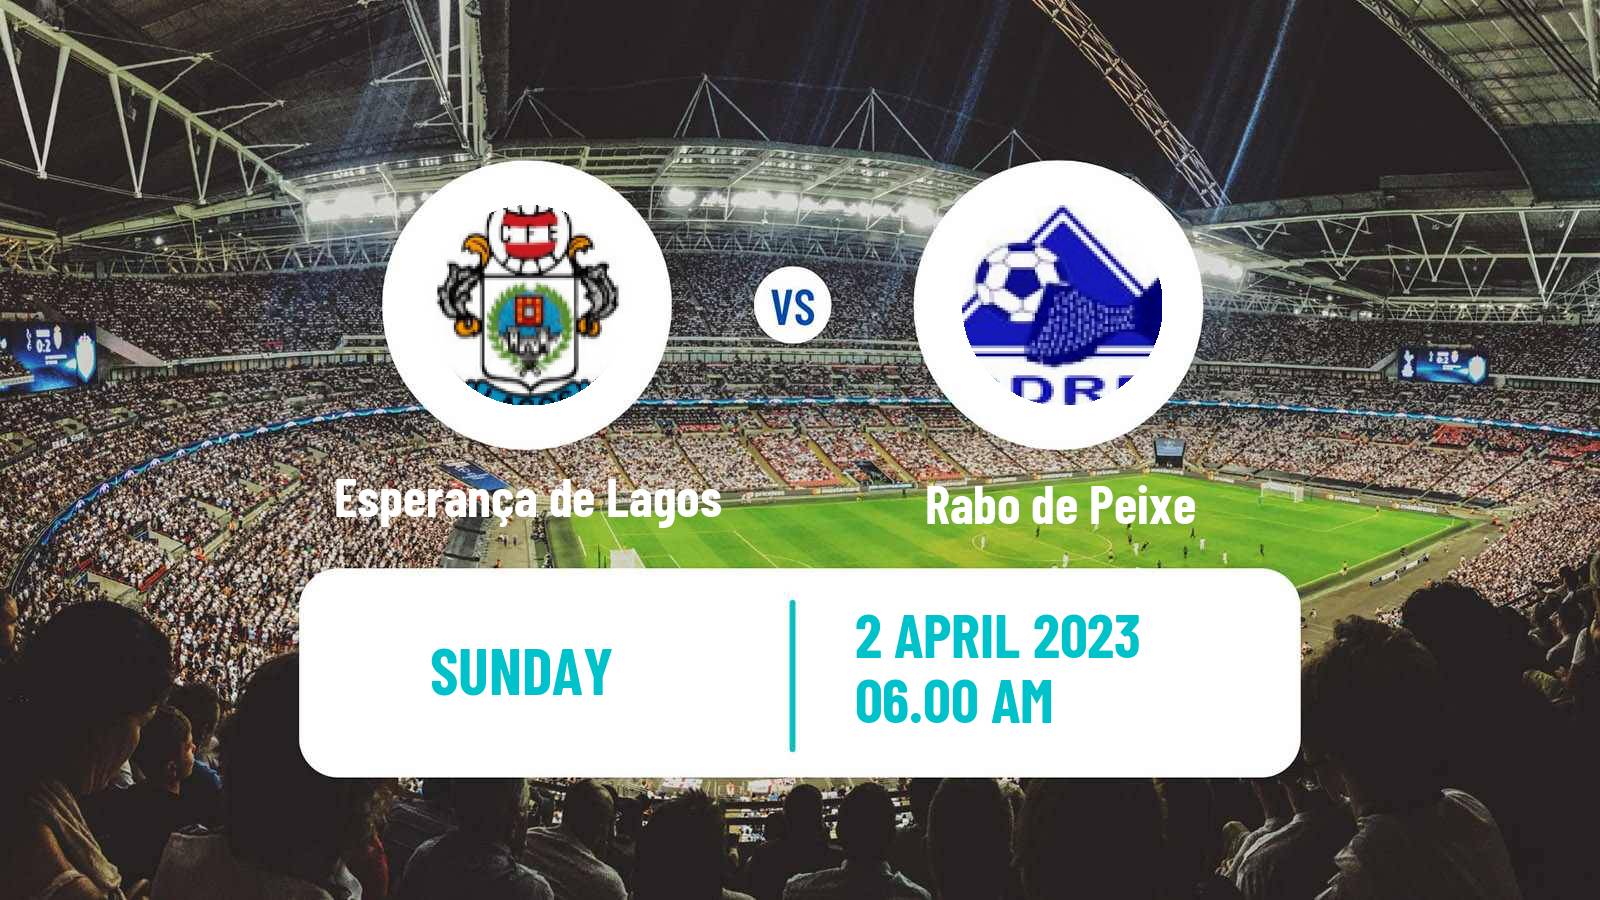 Soccer Campeonato de Portugal Esperança de Lagos - Rabo de Peixe